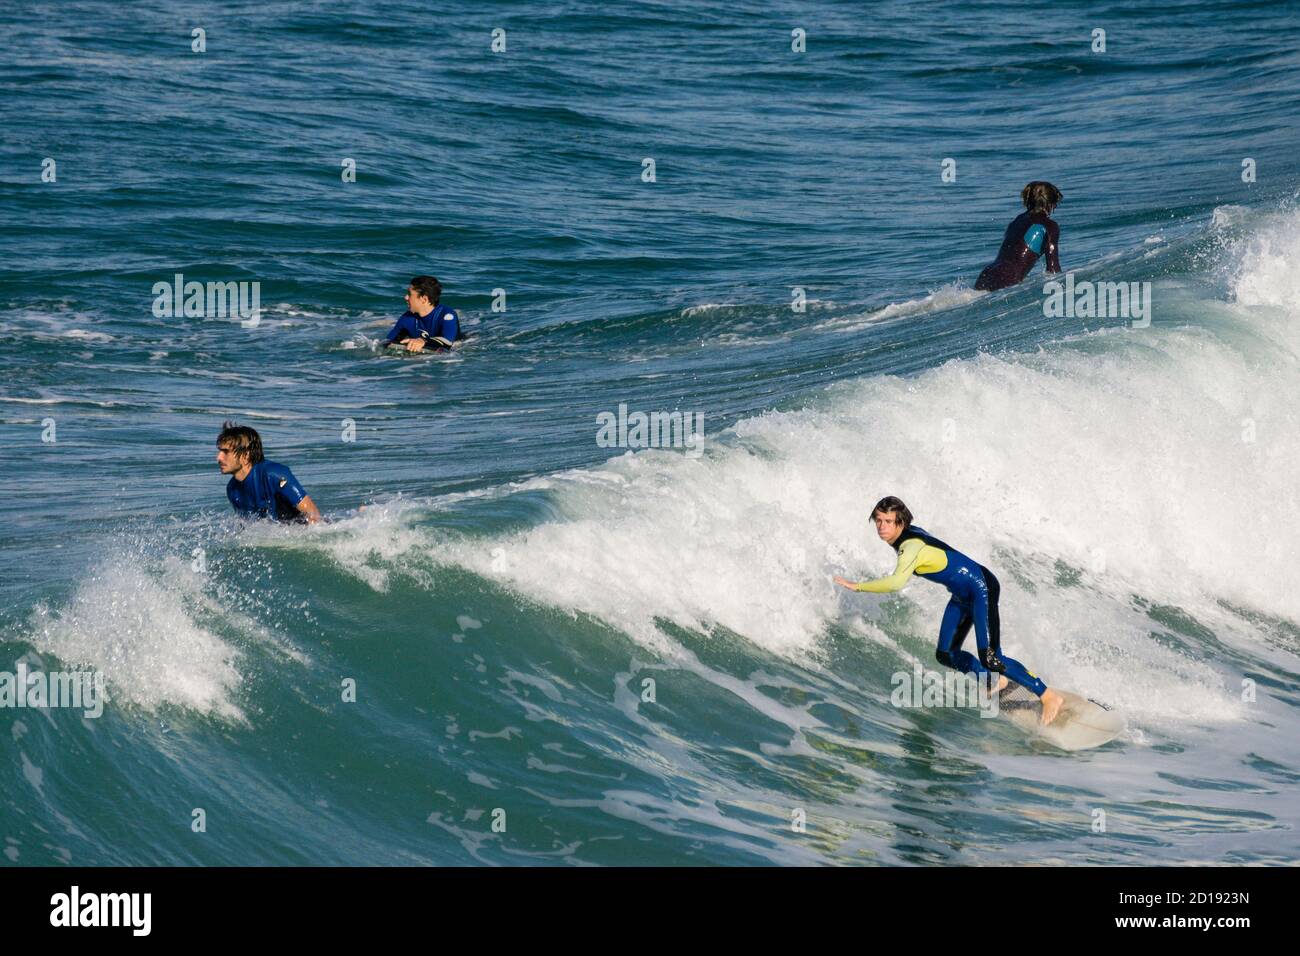 San Sebastian,surf en la bahia de la Concha,Guipuzcoa, Euzkadi, Spain Stock Photo